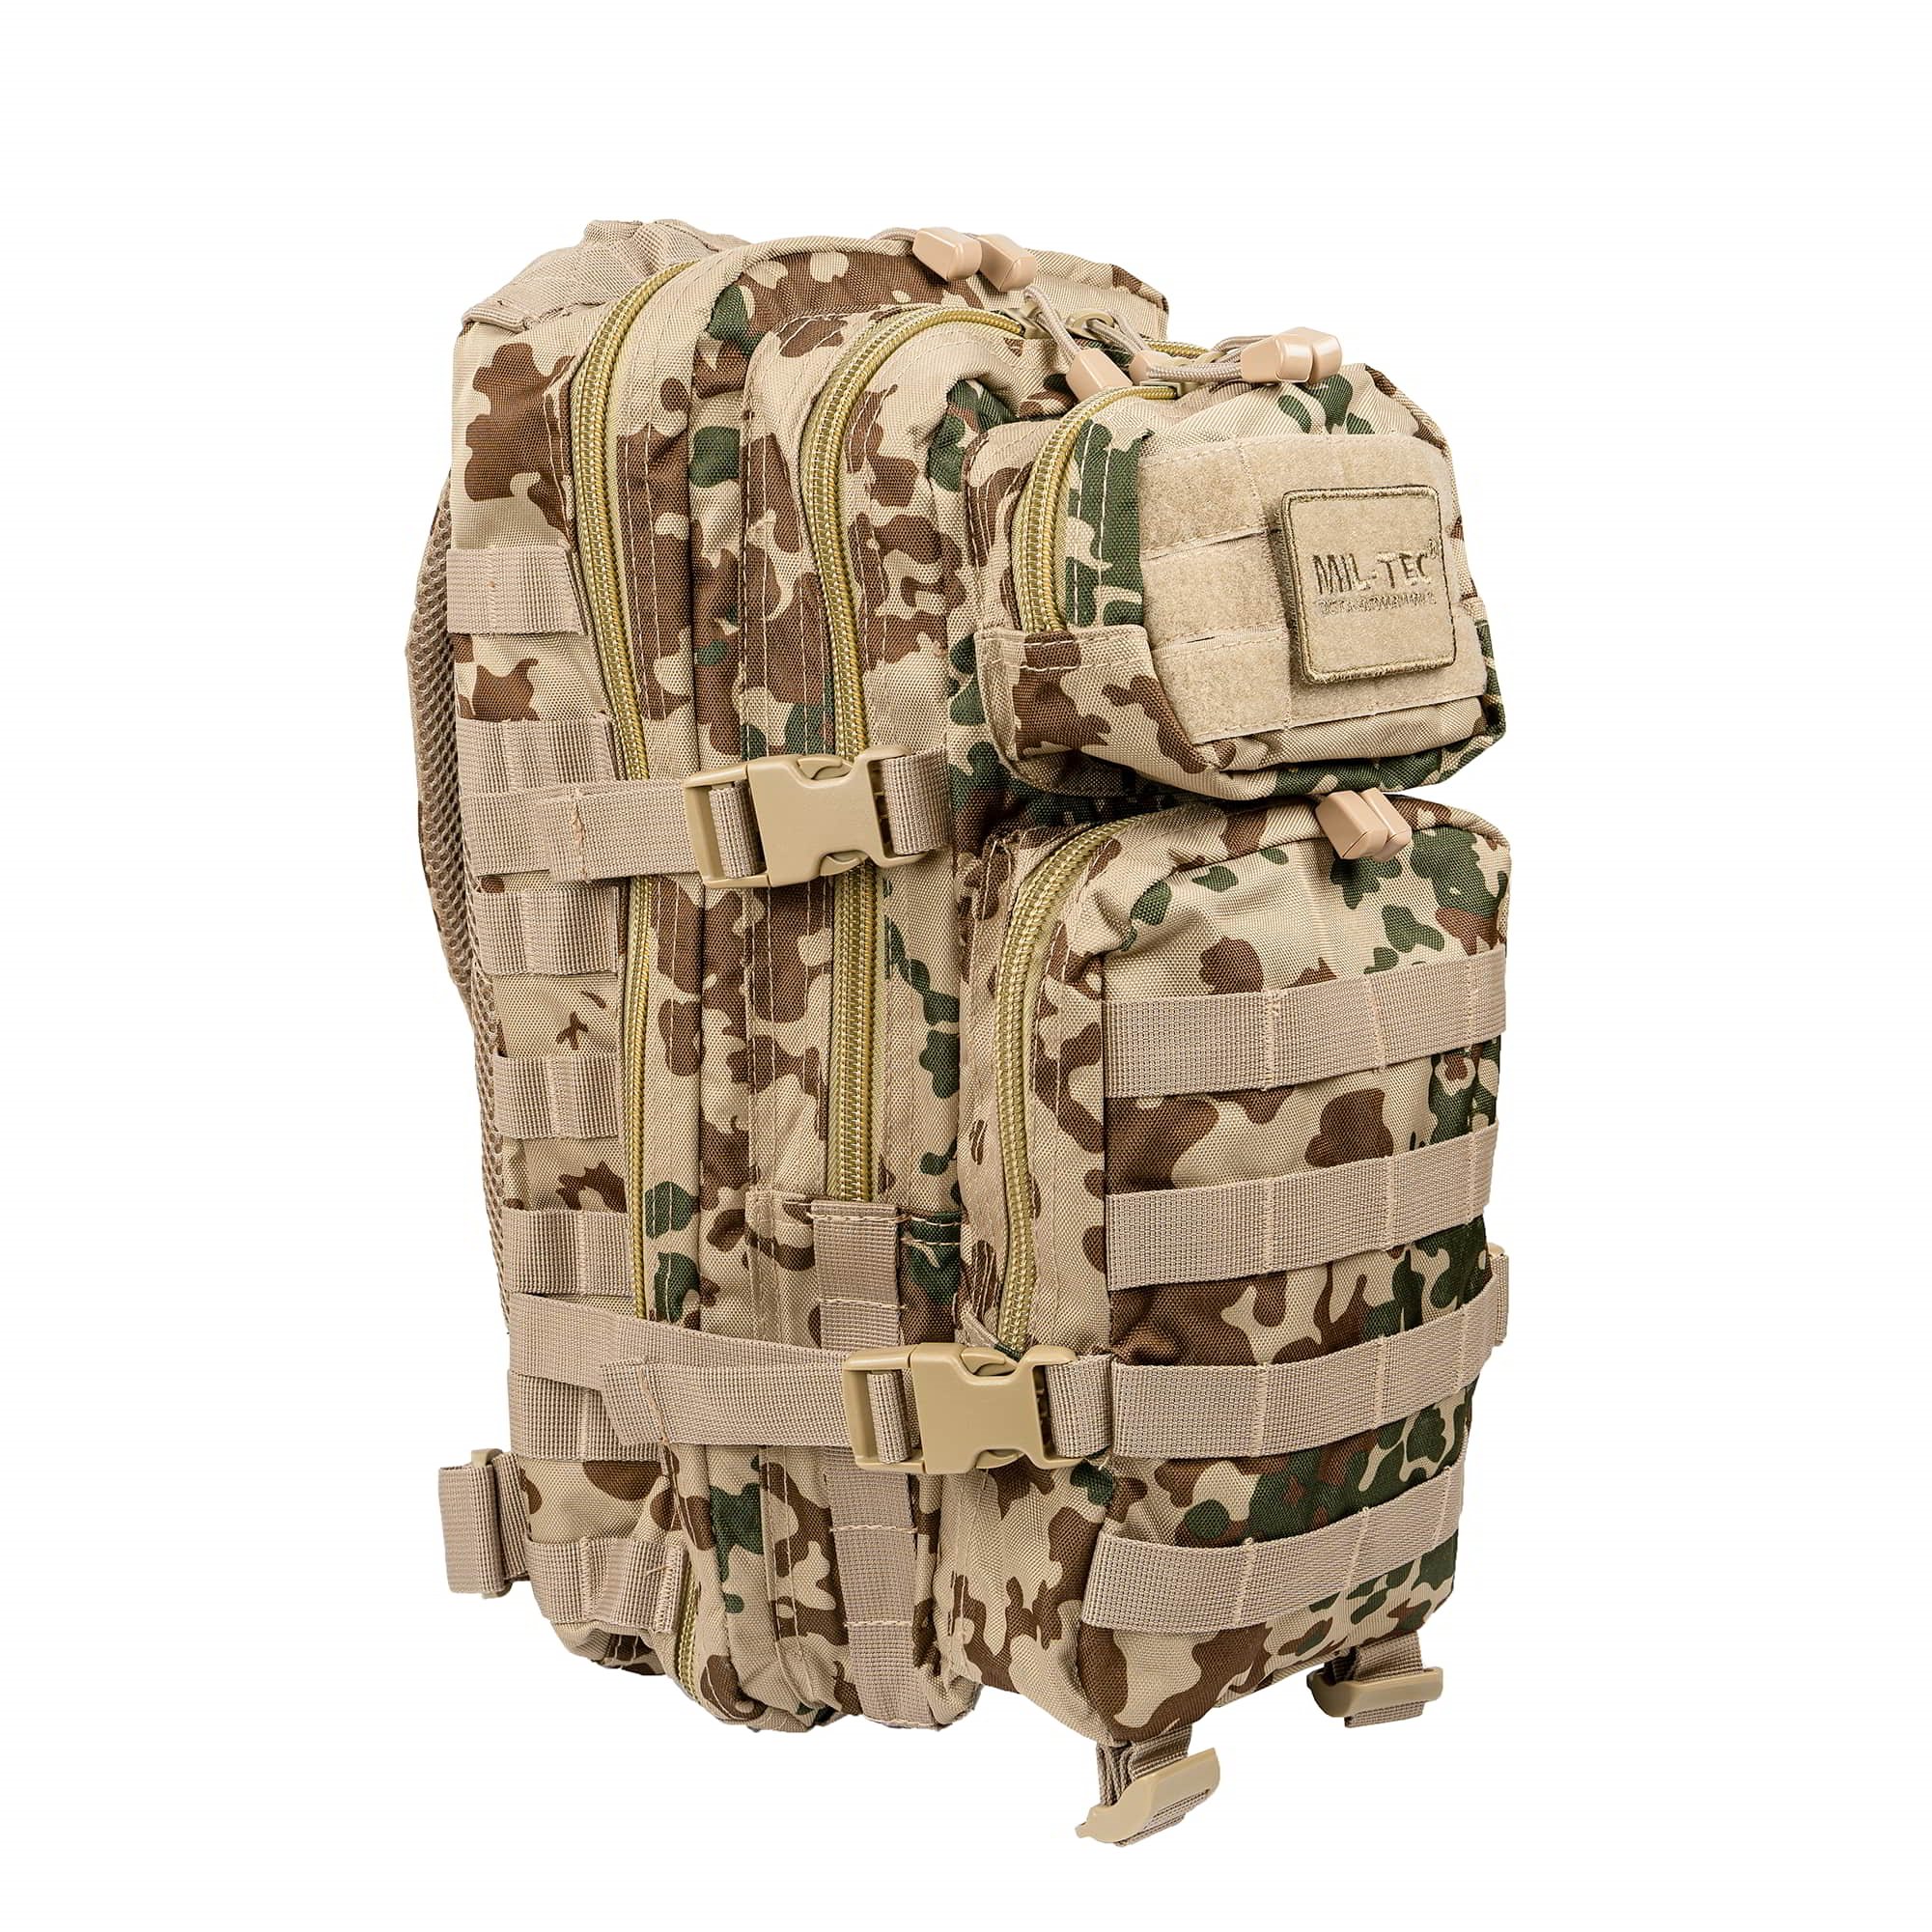 MIL-TEC backpack I | MILITARY RANGE